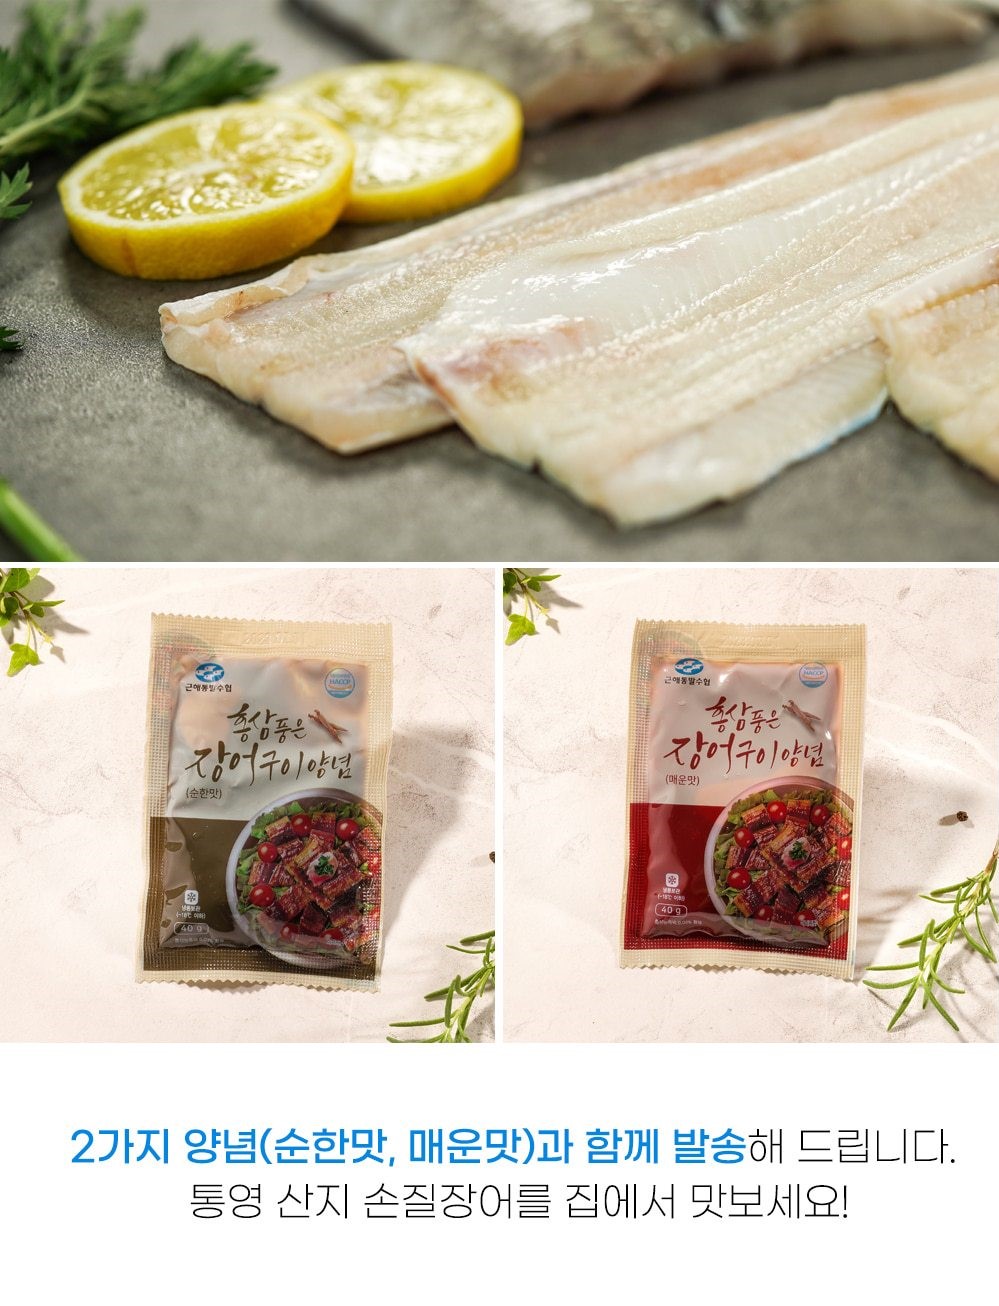 韓國食品-[근해] 프리미엄 자연산 바다장어 240g